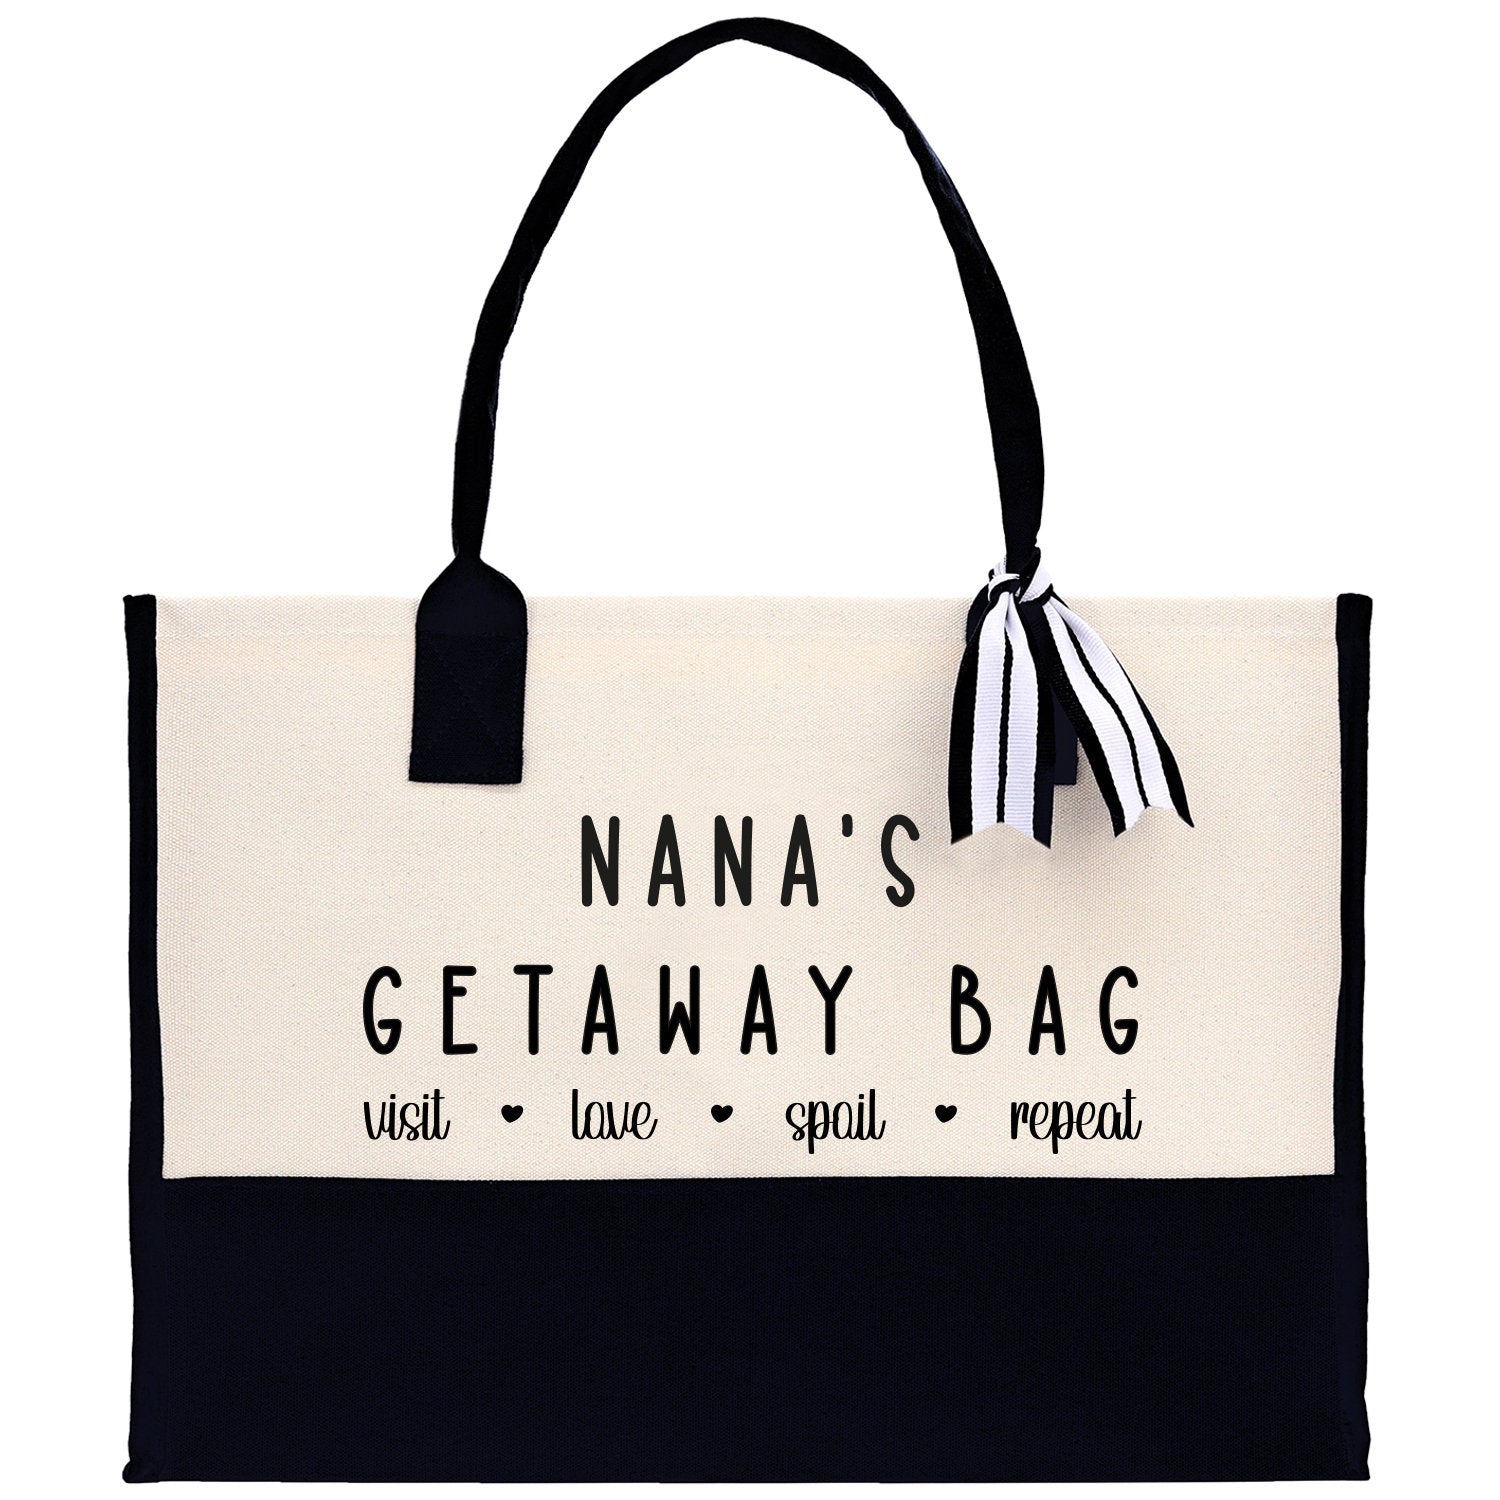 Grandma Tote Bag Grandma's Getaway Bag Grandma Nana Bag Grandma Gift Bag Shopping Bag Mothers Day Gift Live Love Spoil Bag Grandma GM1013